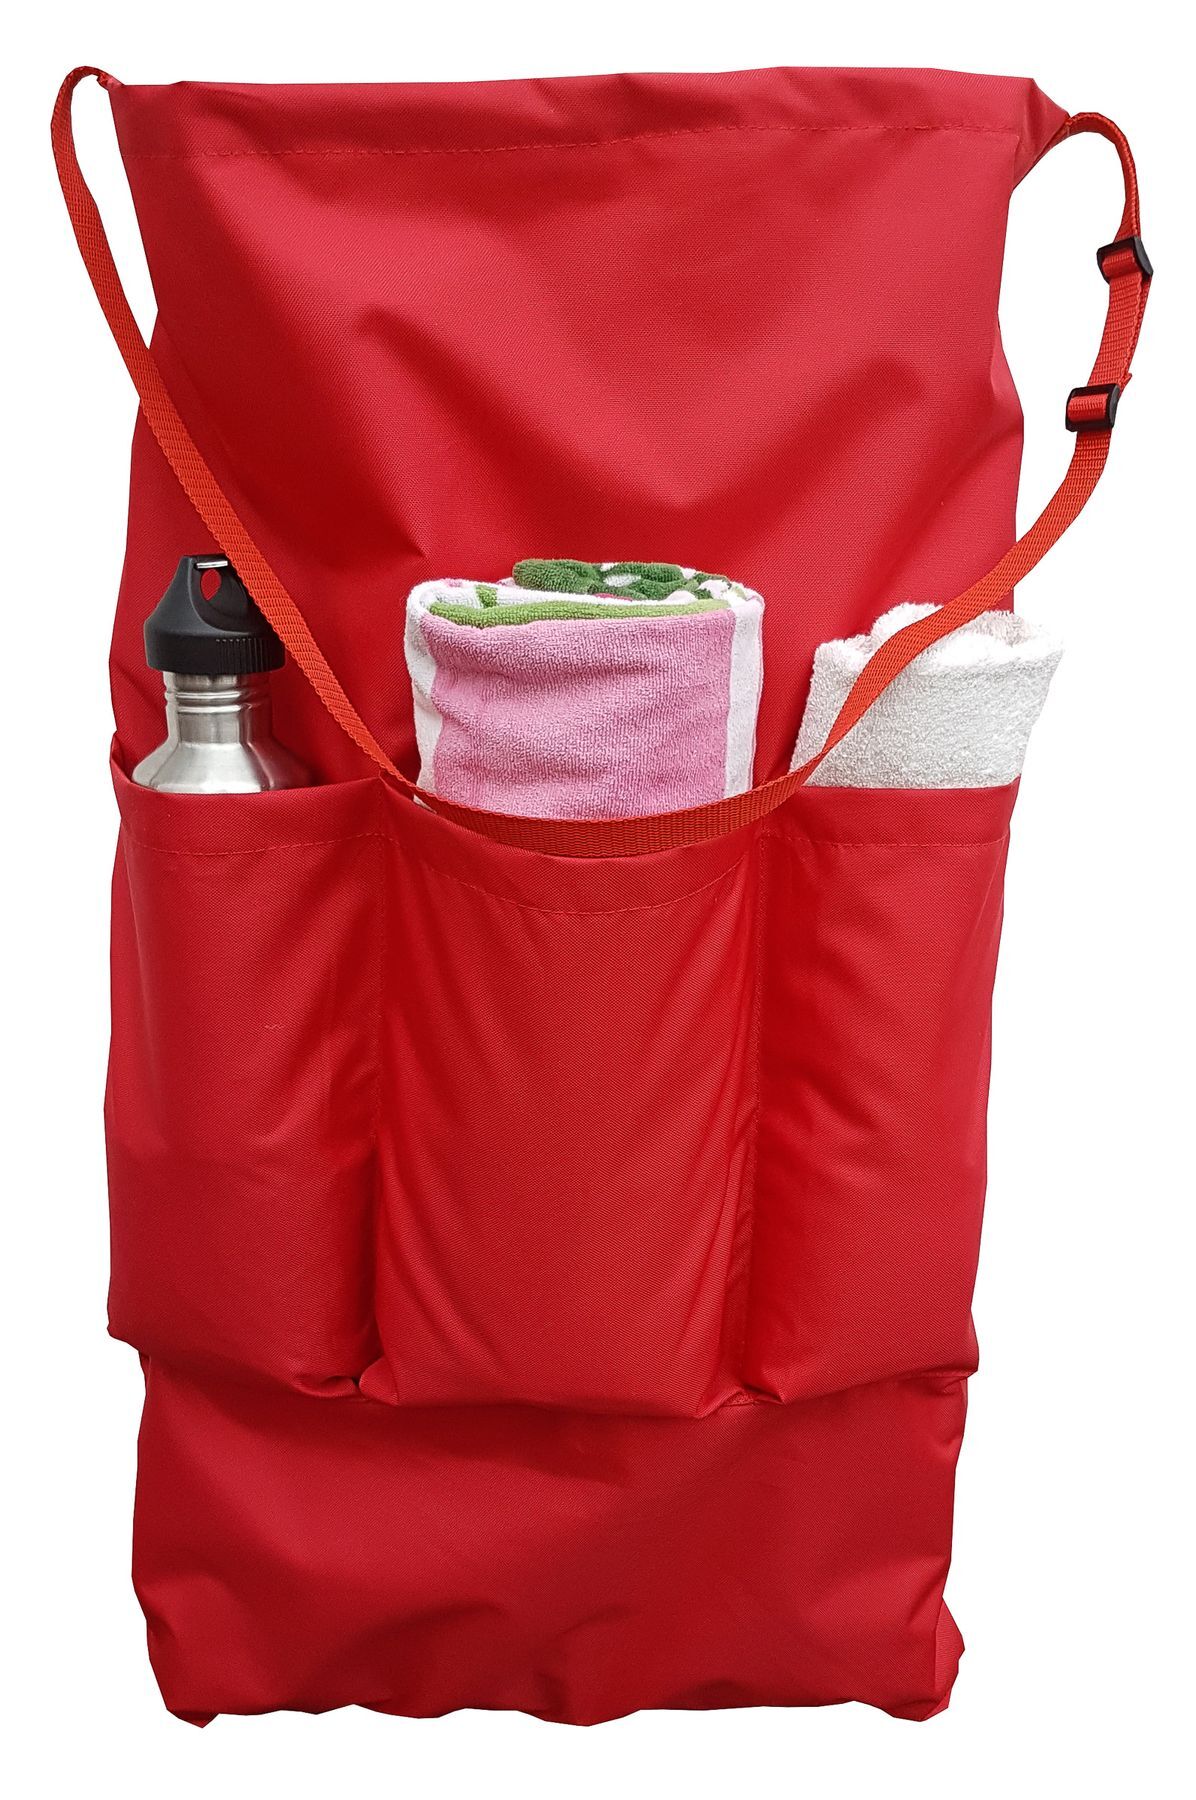 Tasche für Anglerstühle klein in verschiedenen Farben wählbar V-10-900